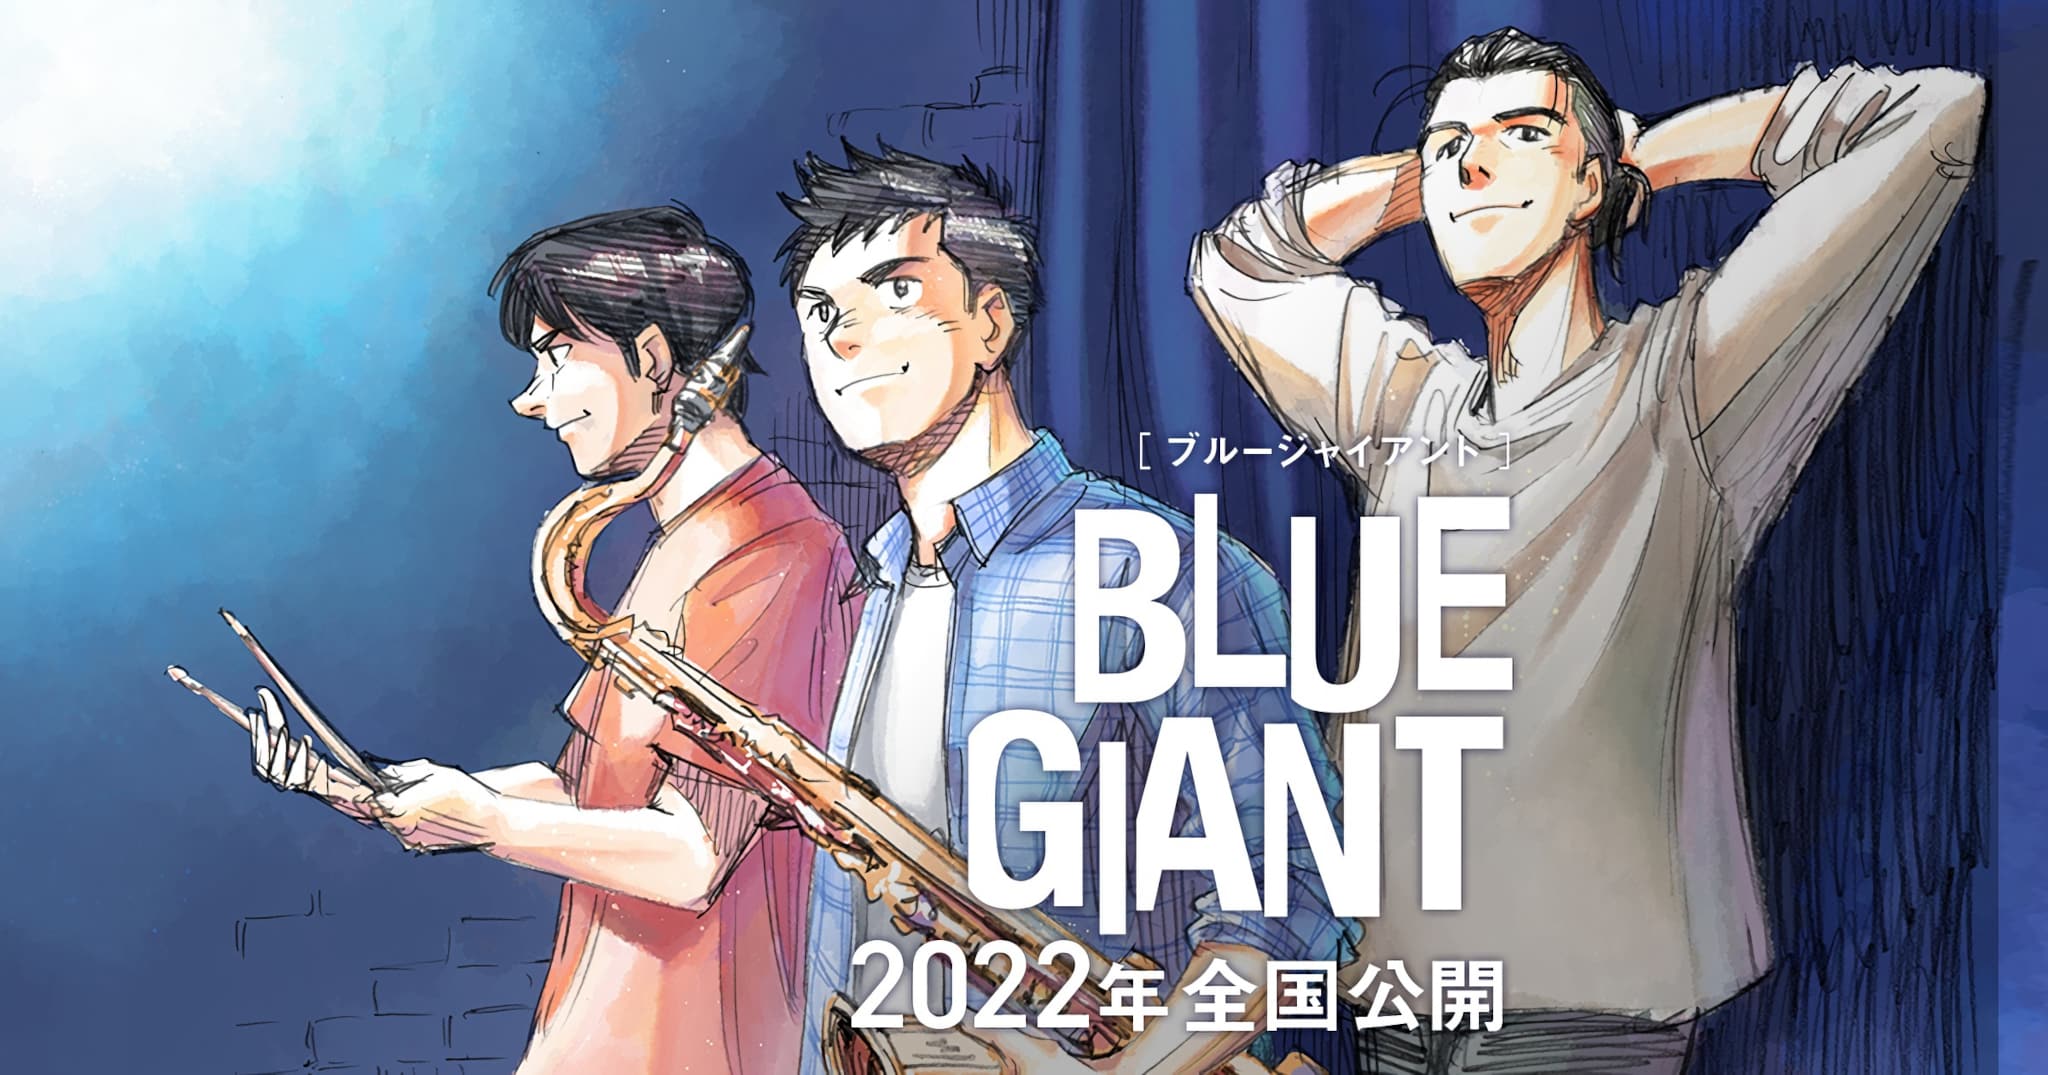 Premier visuel pour le film Blue Giant